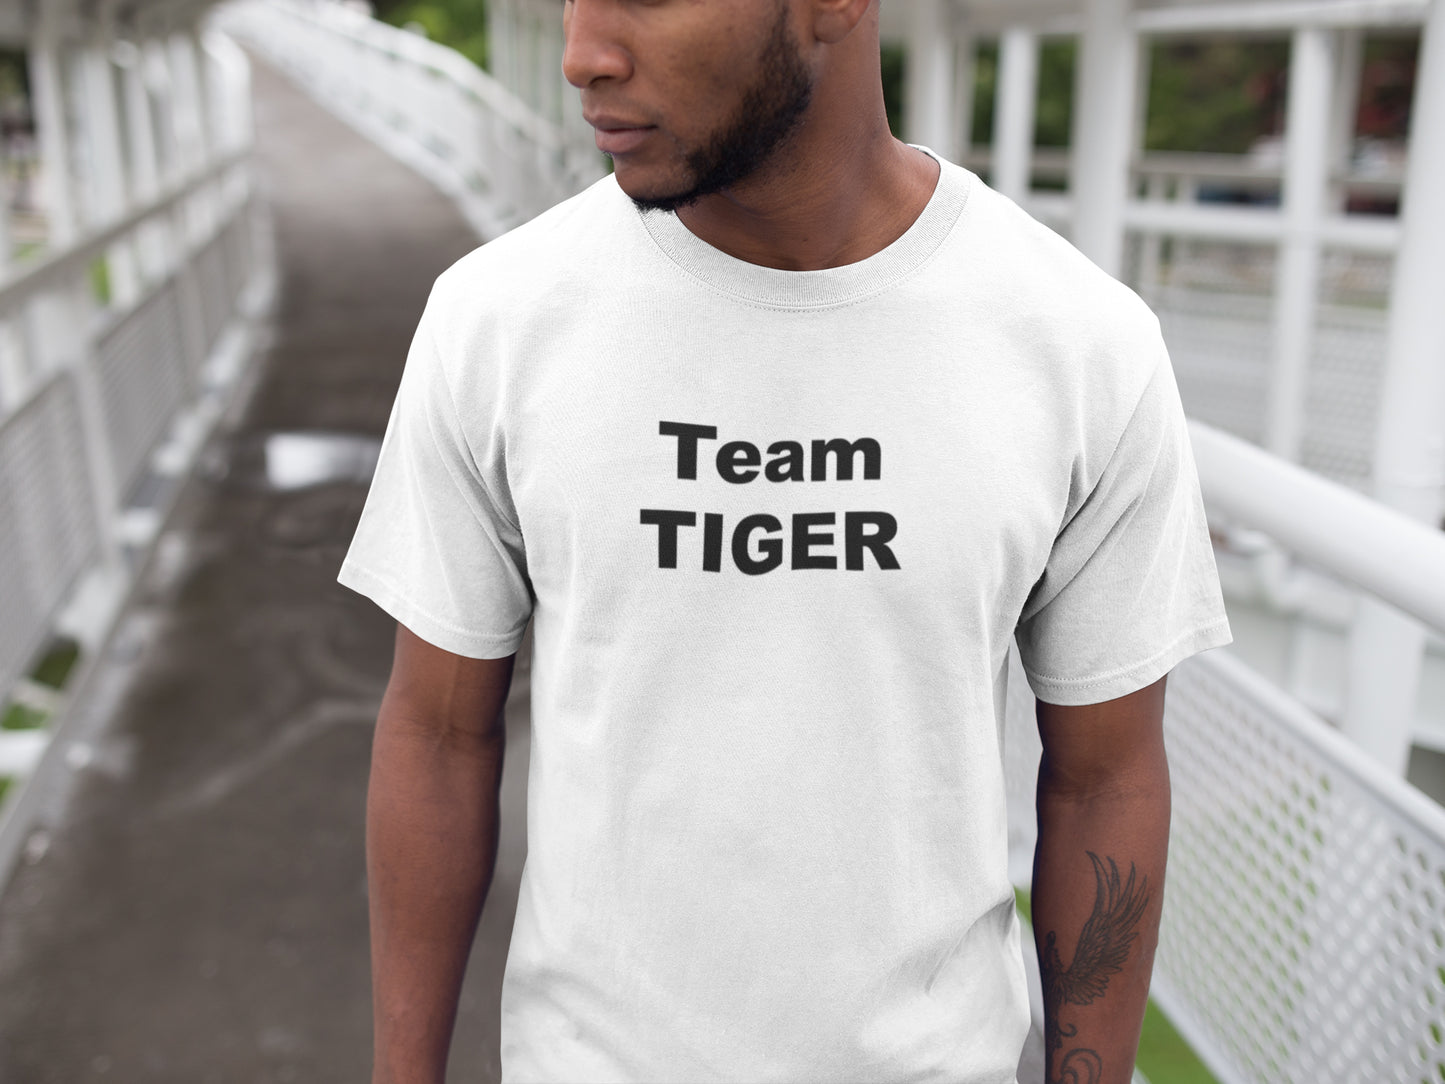 Team Tiger Summer T-shirt for Men